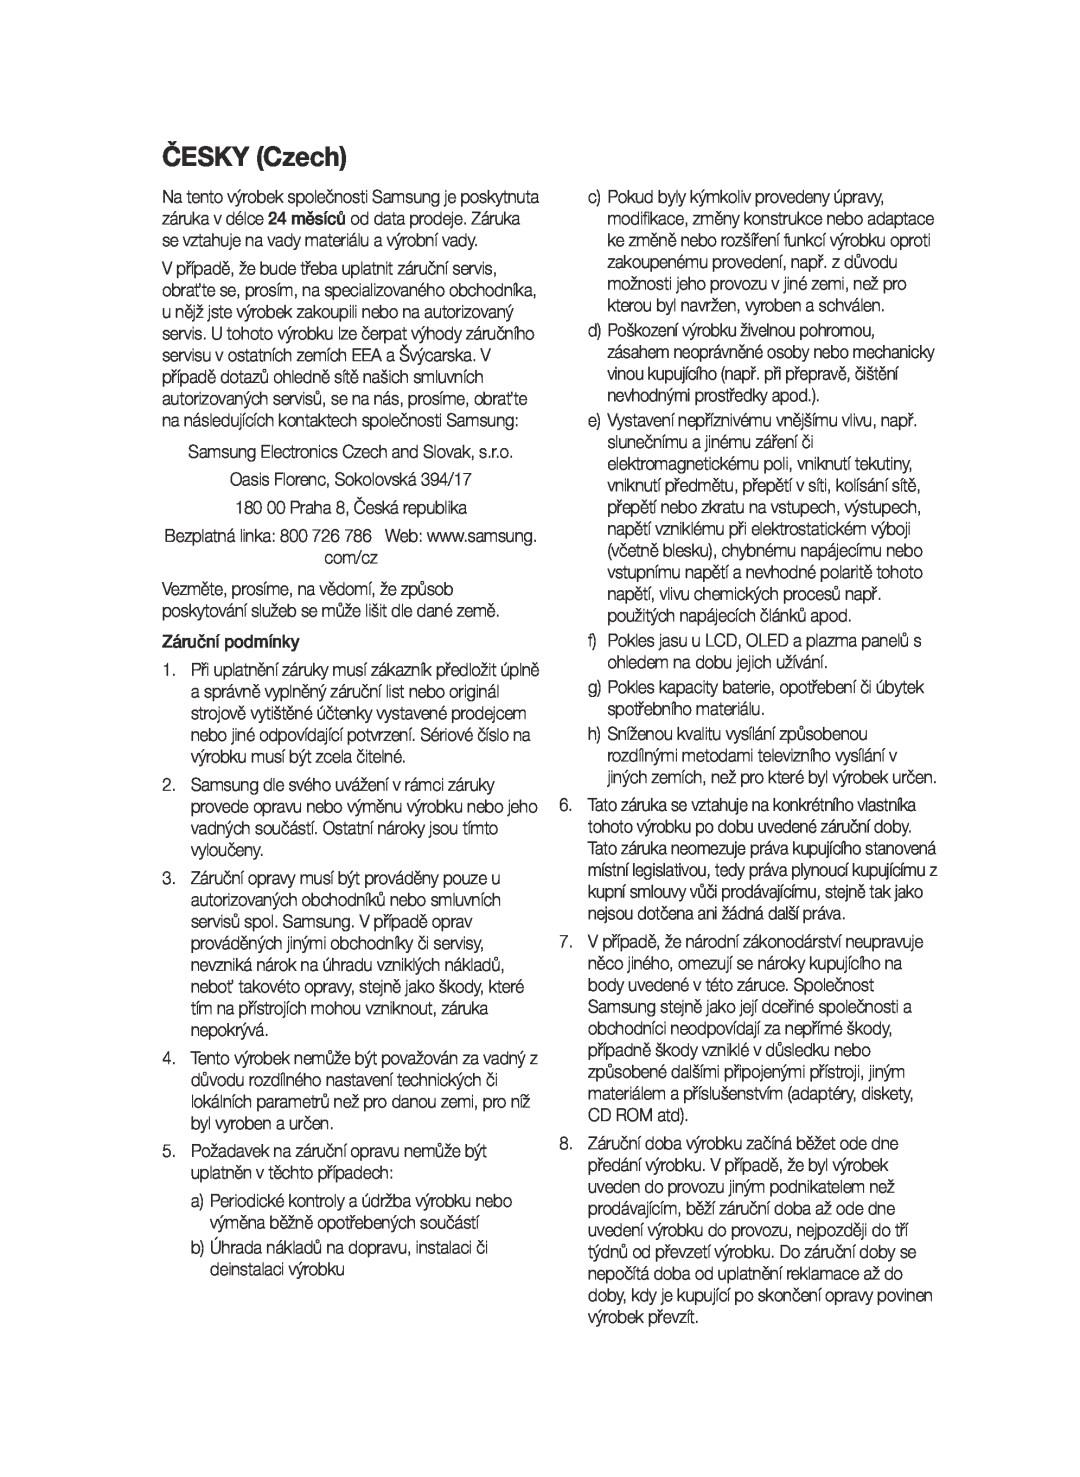 Samsung BD-E6300/EN manual ČESKY Czech, com/cz, b Úhrada nákladů na dopravu, instalaci či deinstalaci výrobku 